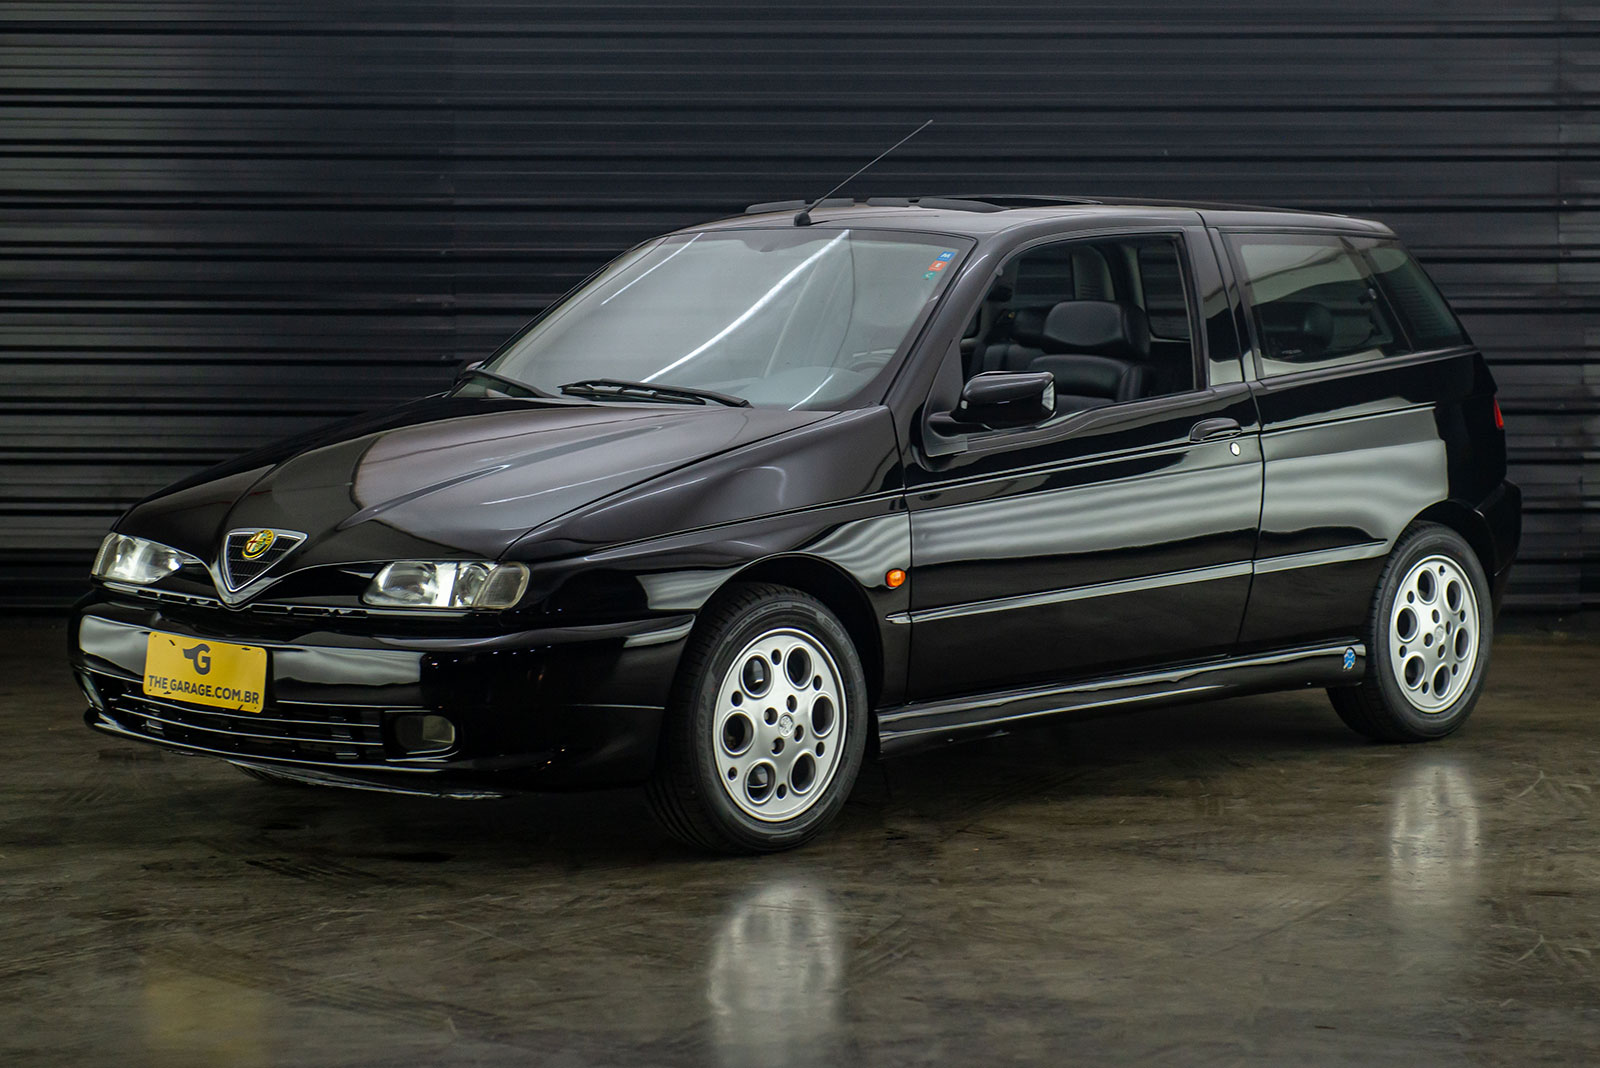 1996-Alfa-Romeo-145-Quadrifoglio-a-venda-sao-paulo-sp-for-sale-the-garage-classicos-a-carros-antigos